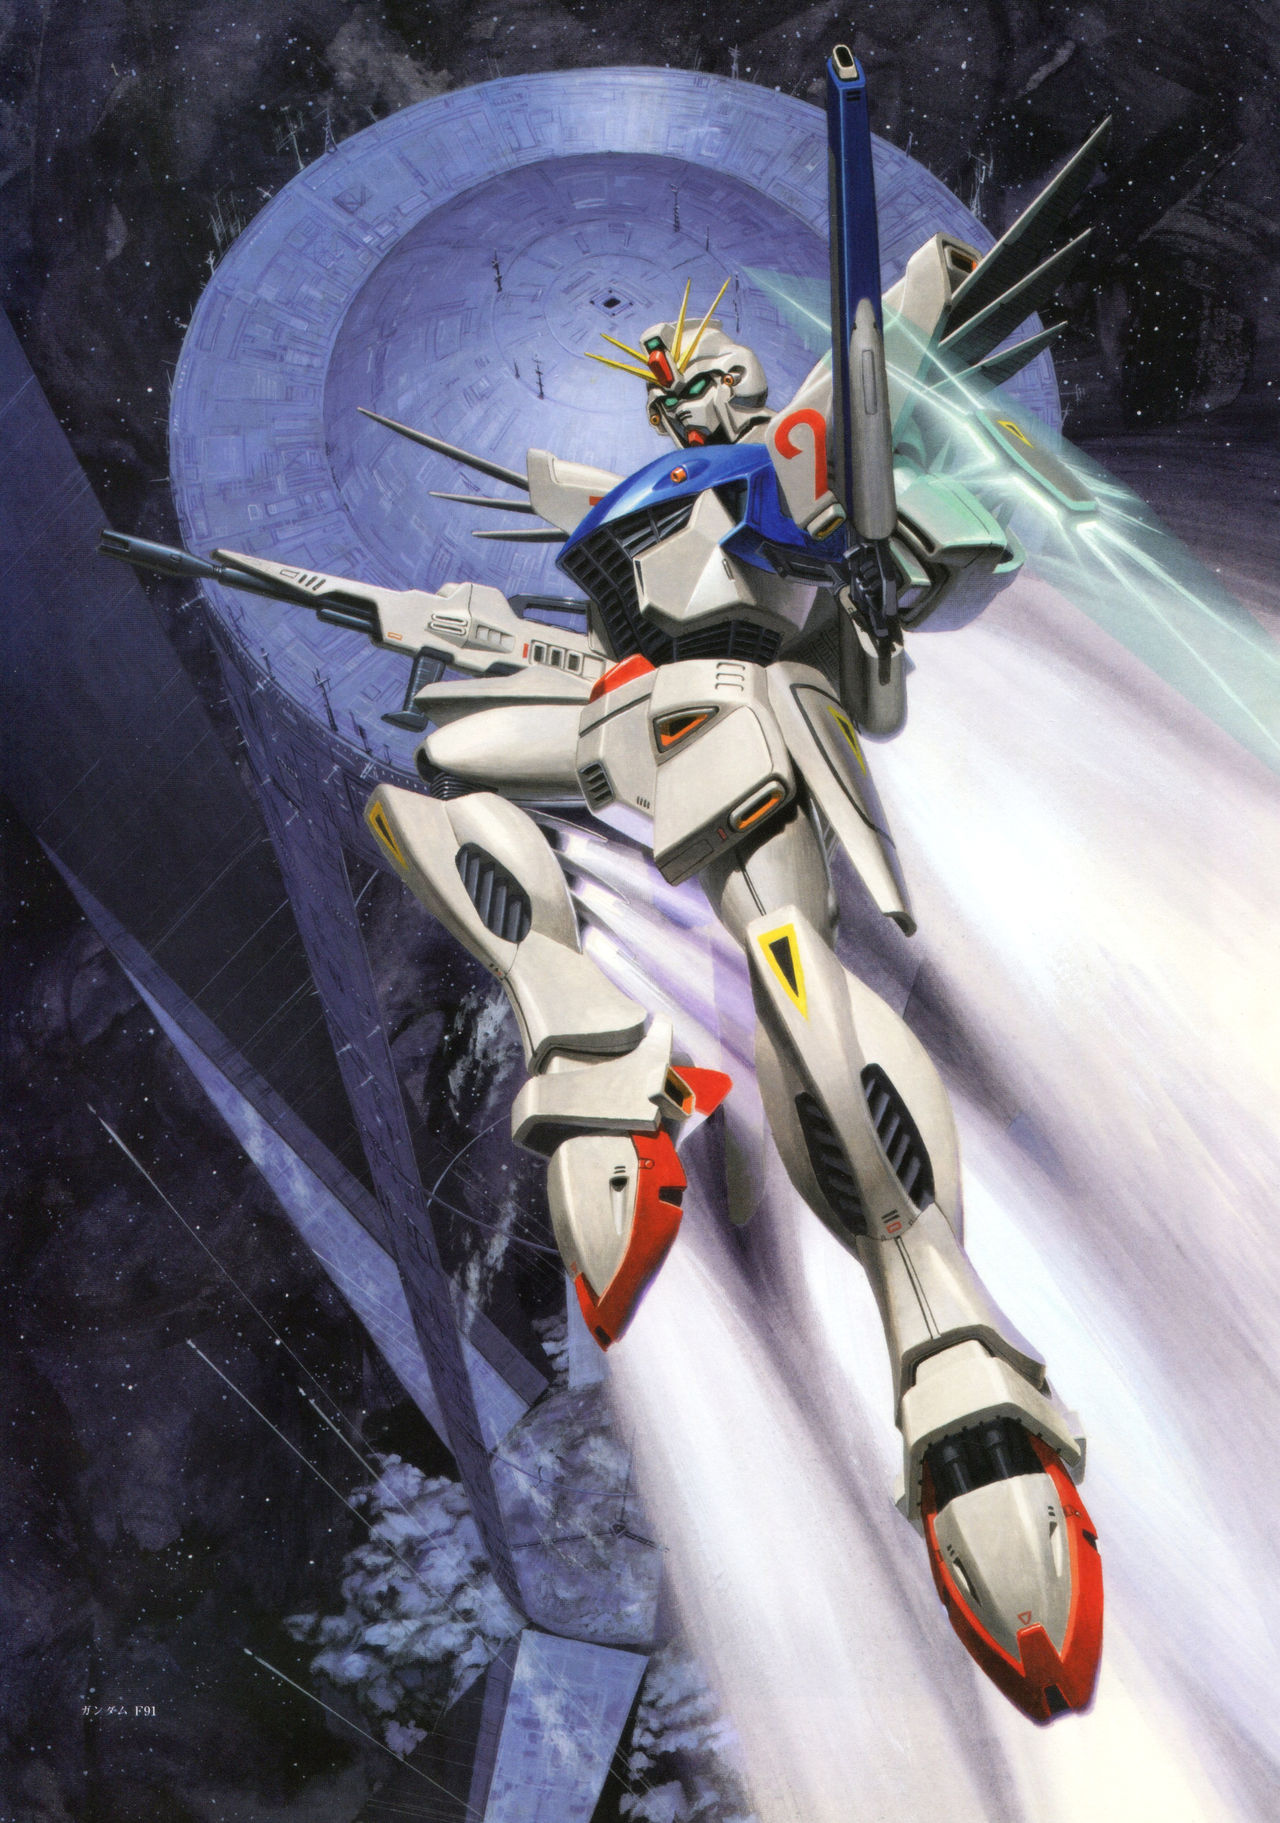 [Yuji Kaida] Gundam - Art Works